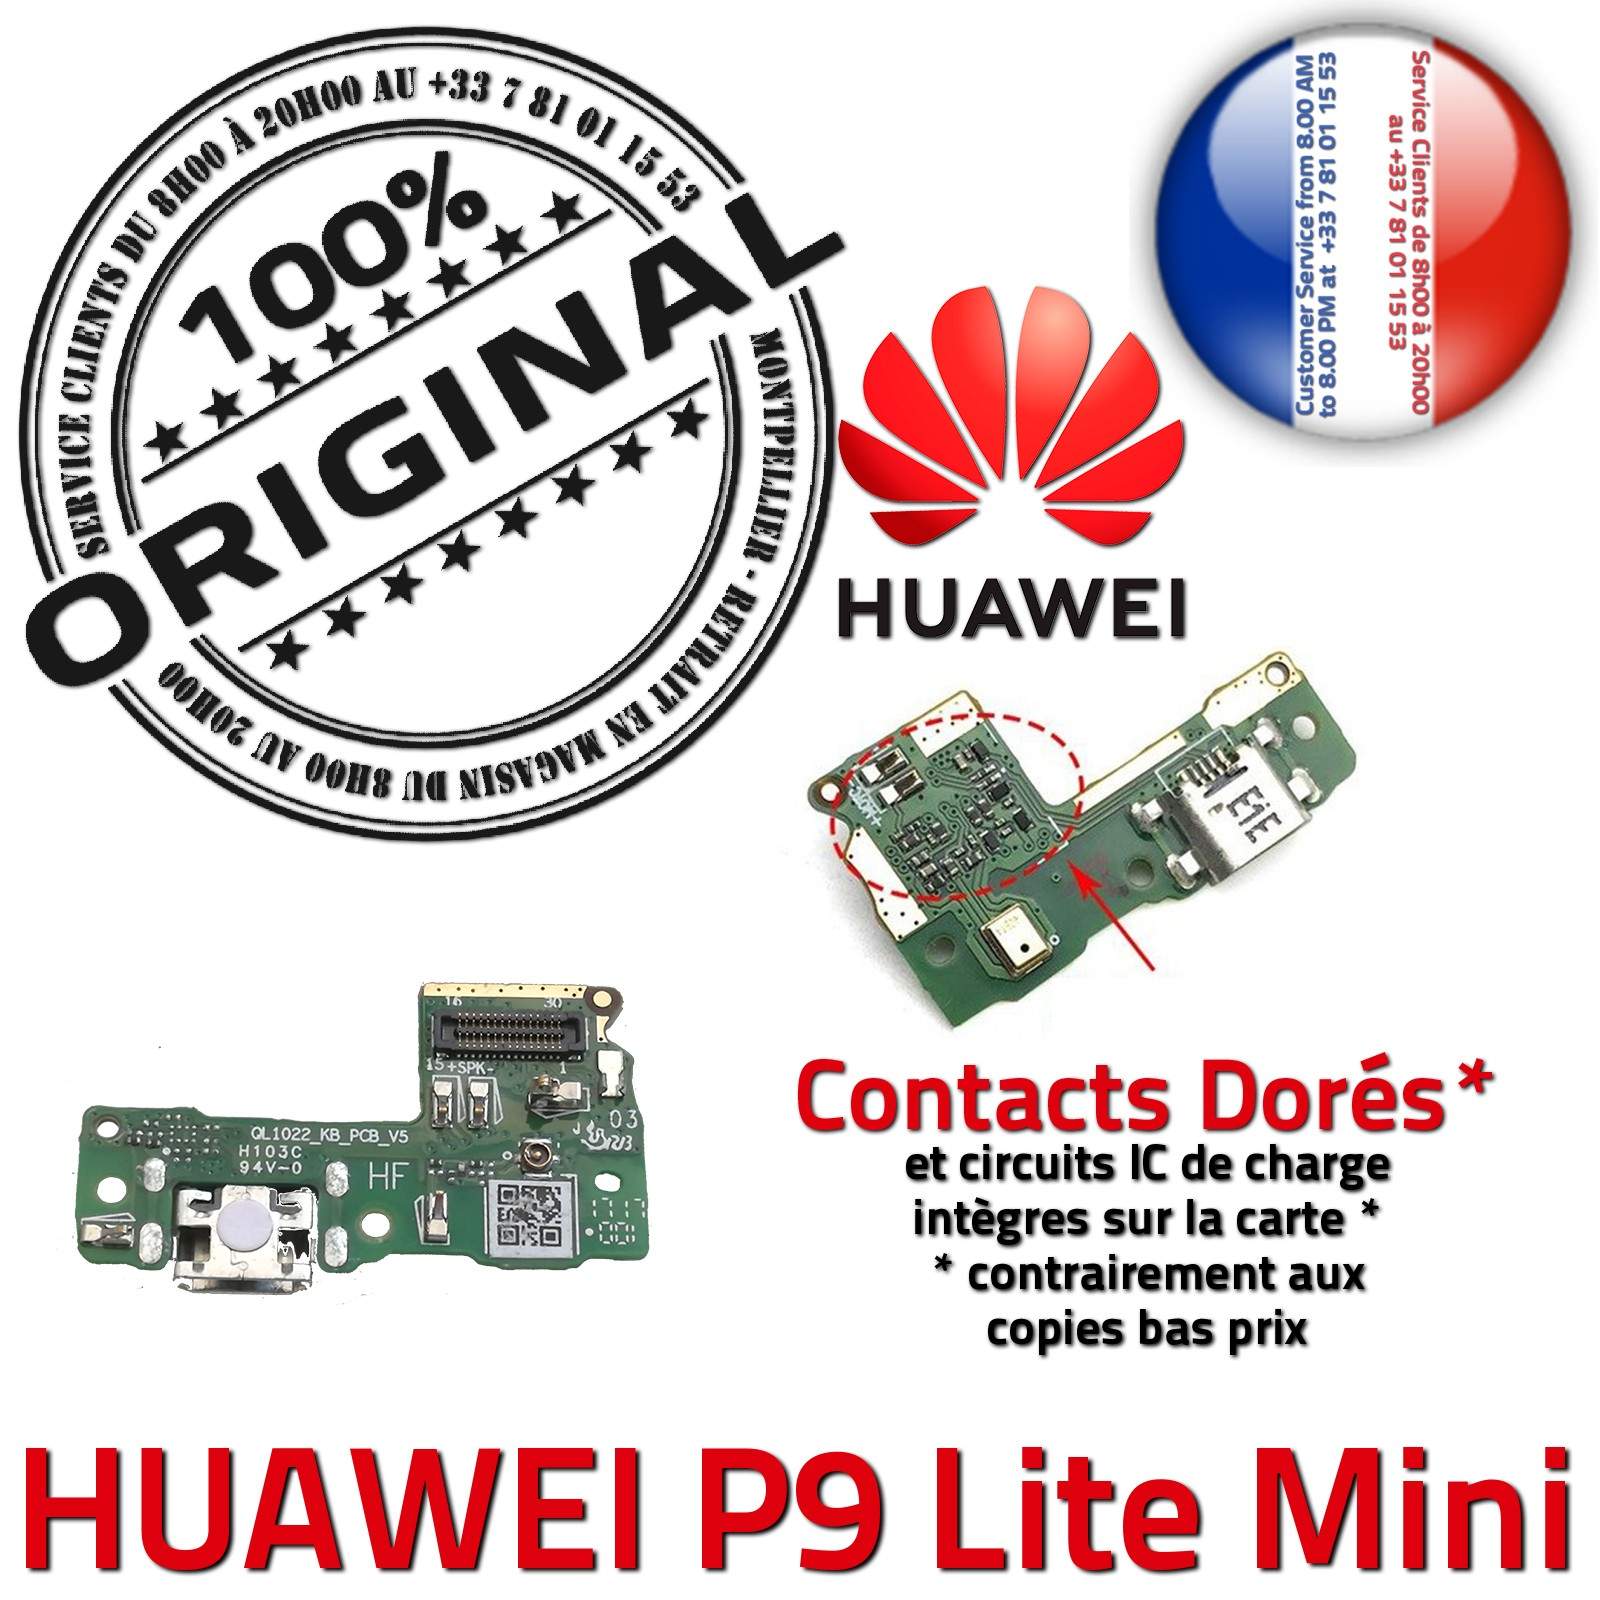 Huawei P9 Lite Mini JACK Branchement Chargeur Nappe Micro USB ORIGINAL Téléphone PORT Câble de Charge Qualité Microphone Antenne